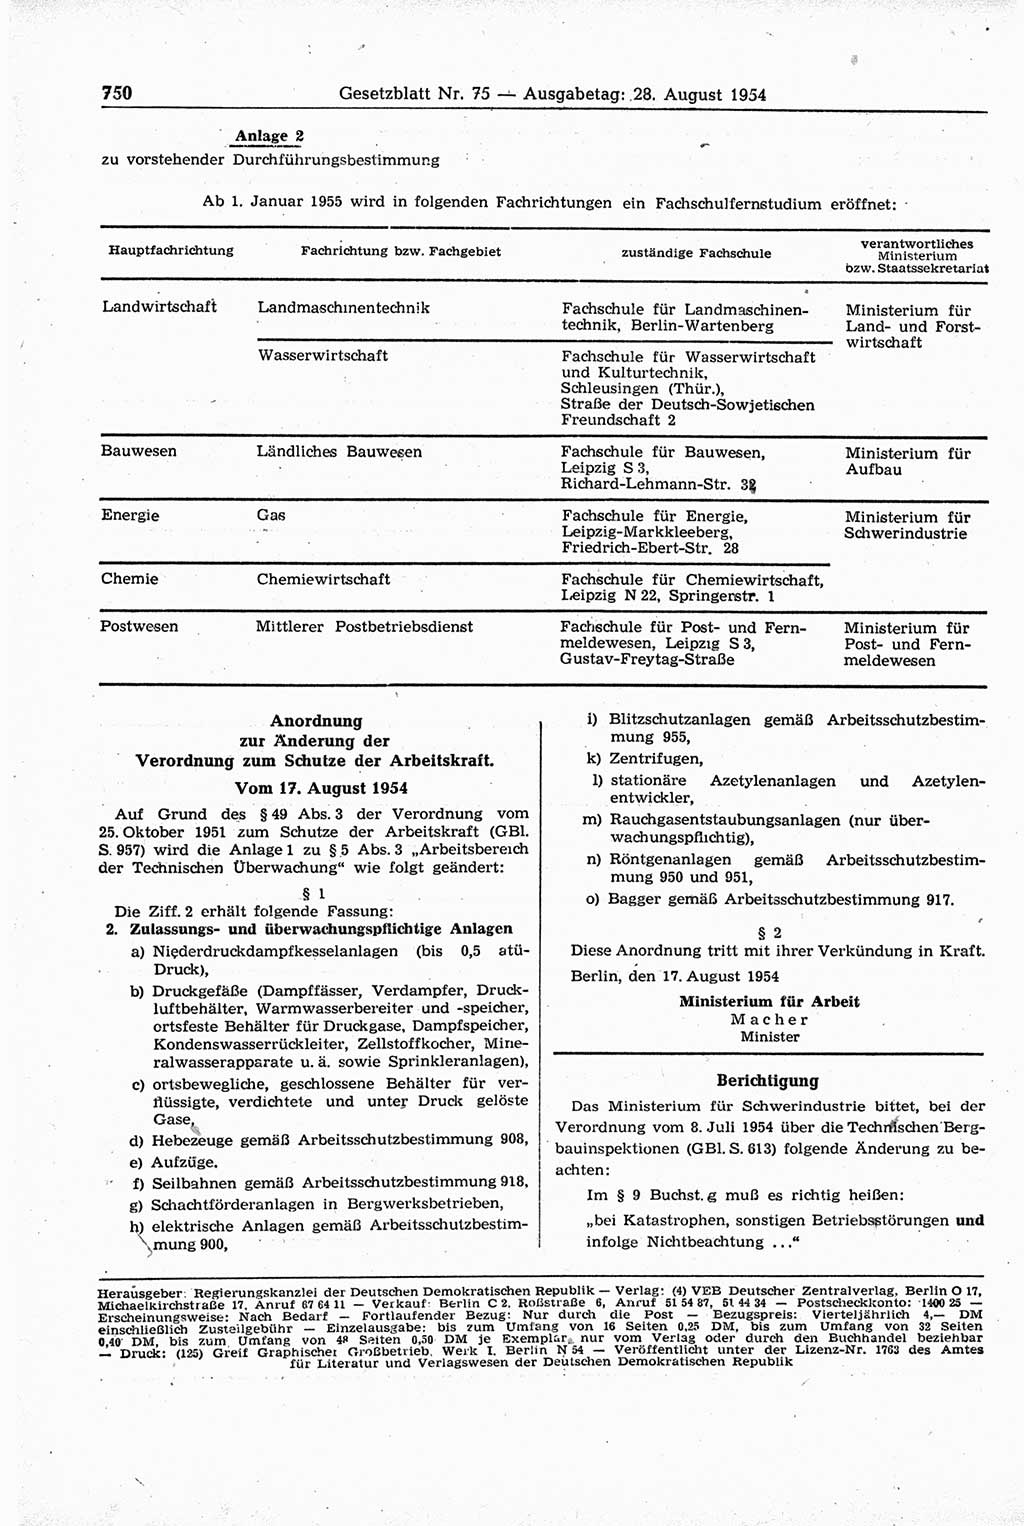 Gesetzblatt (GBl.) der Deutschen Demokratischen Republik (DDR) 1954, Seite 750 (GBl. DDR 1954, S. 750)